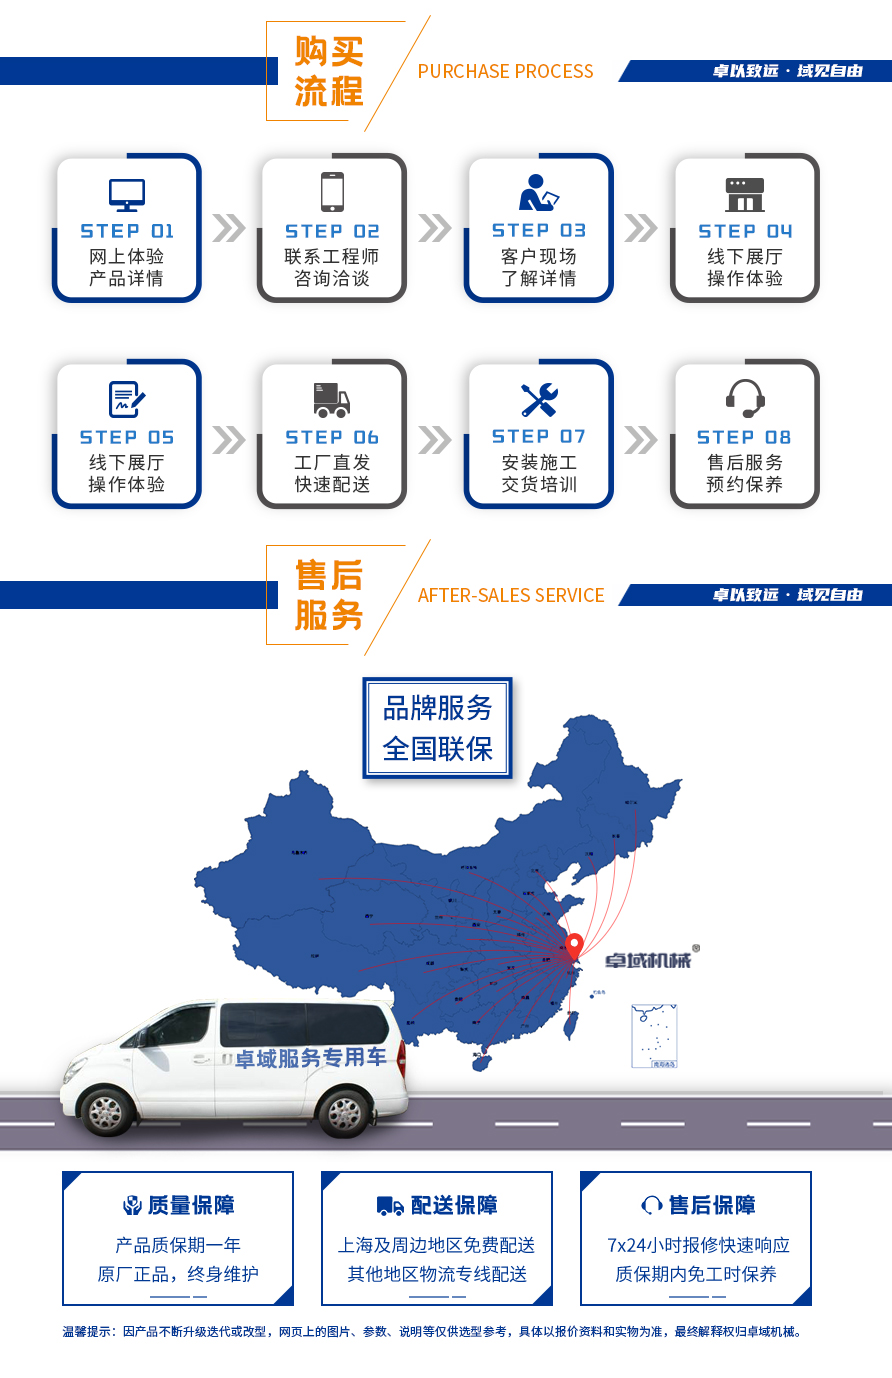 上海卓域机械购买流程与售后服务